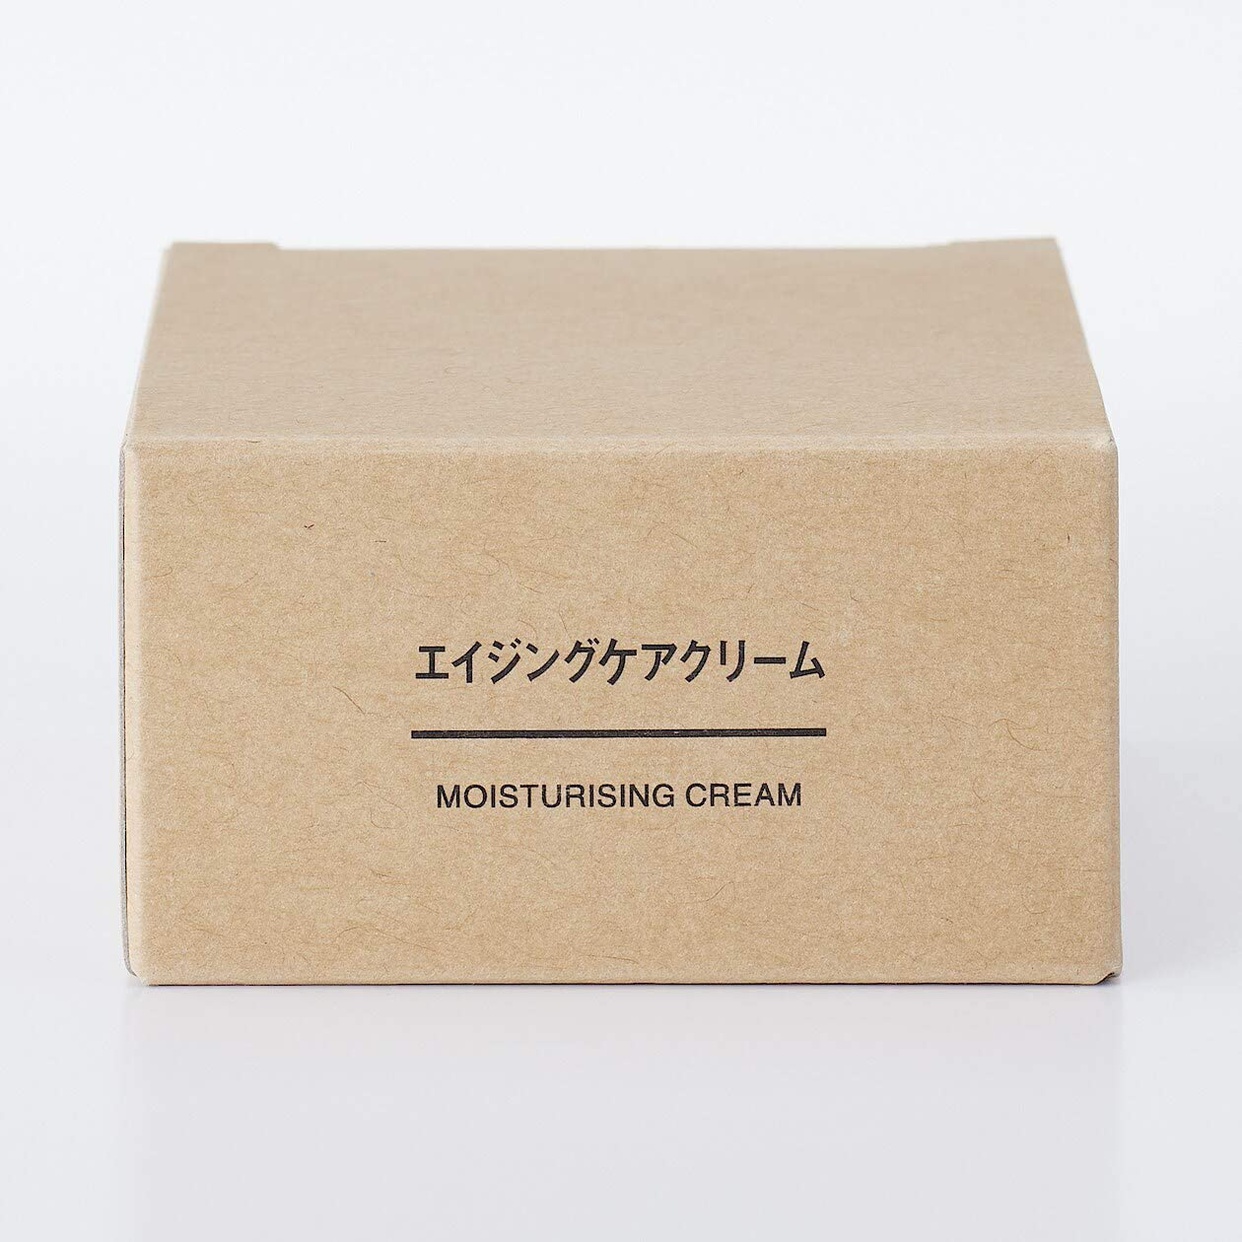 無印良品(MUJI) エイジングケアクリームの商品画像サムネ4 